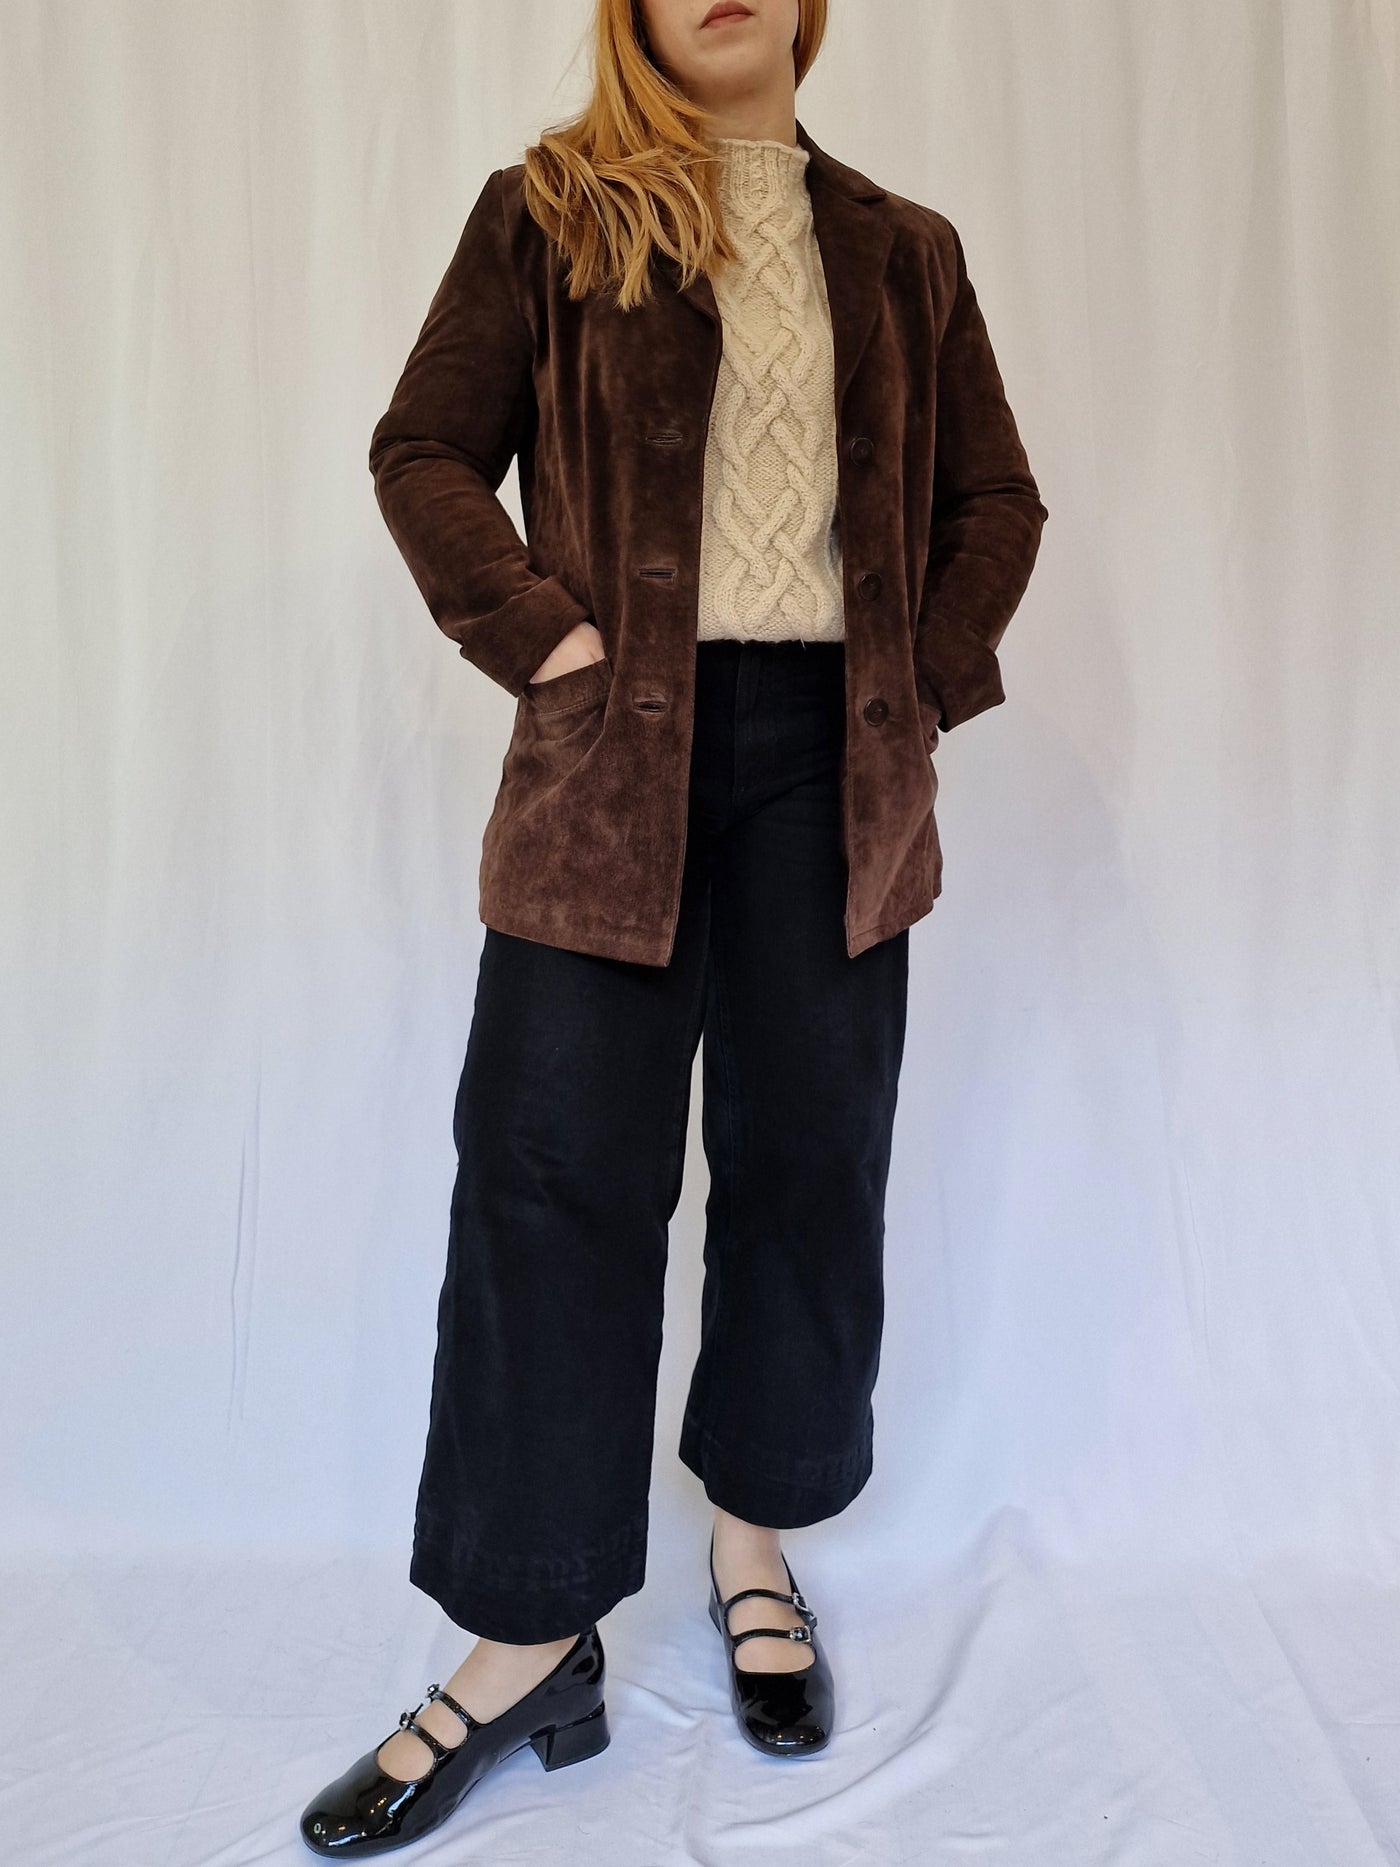 Vintage 90s Dark Brown Genuine Suede Leather Blazer Style Jacket - XS/S